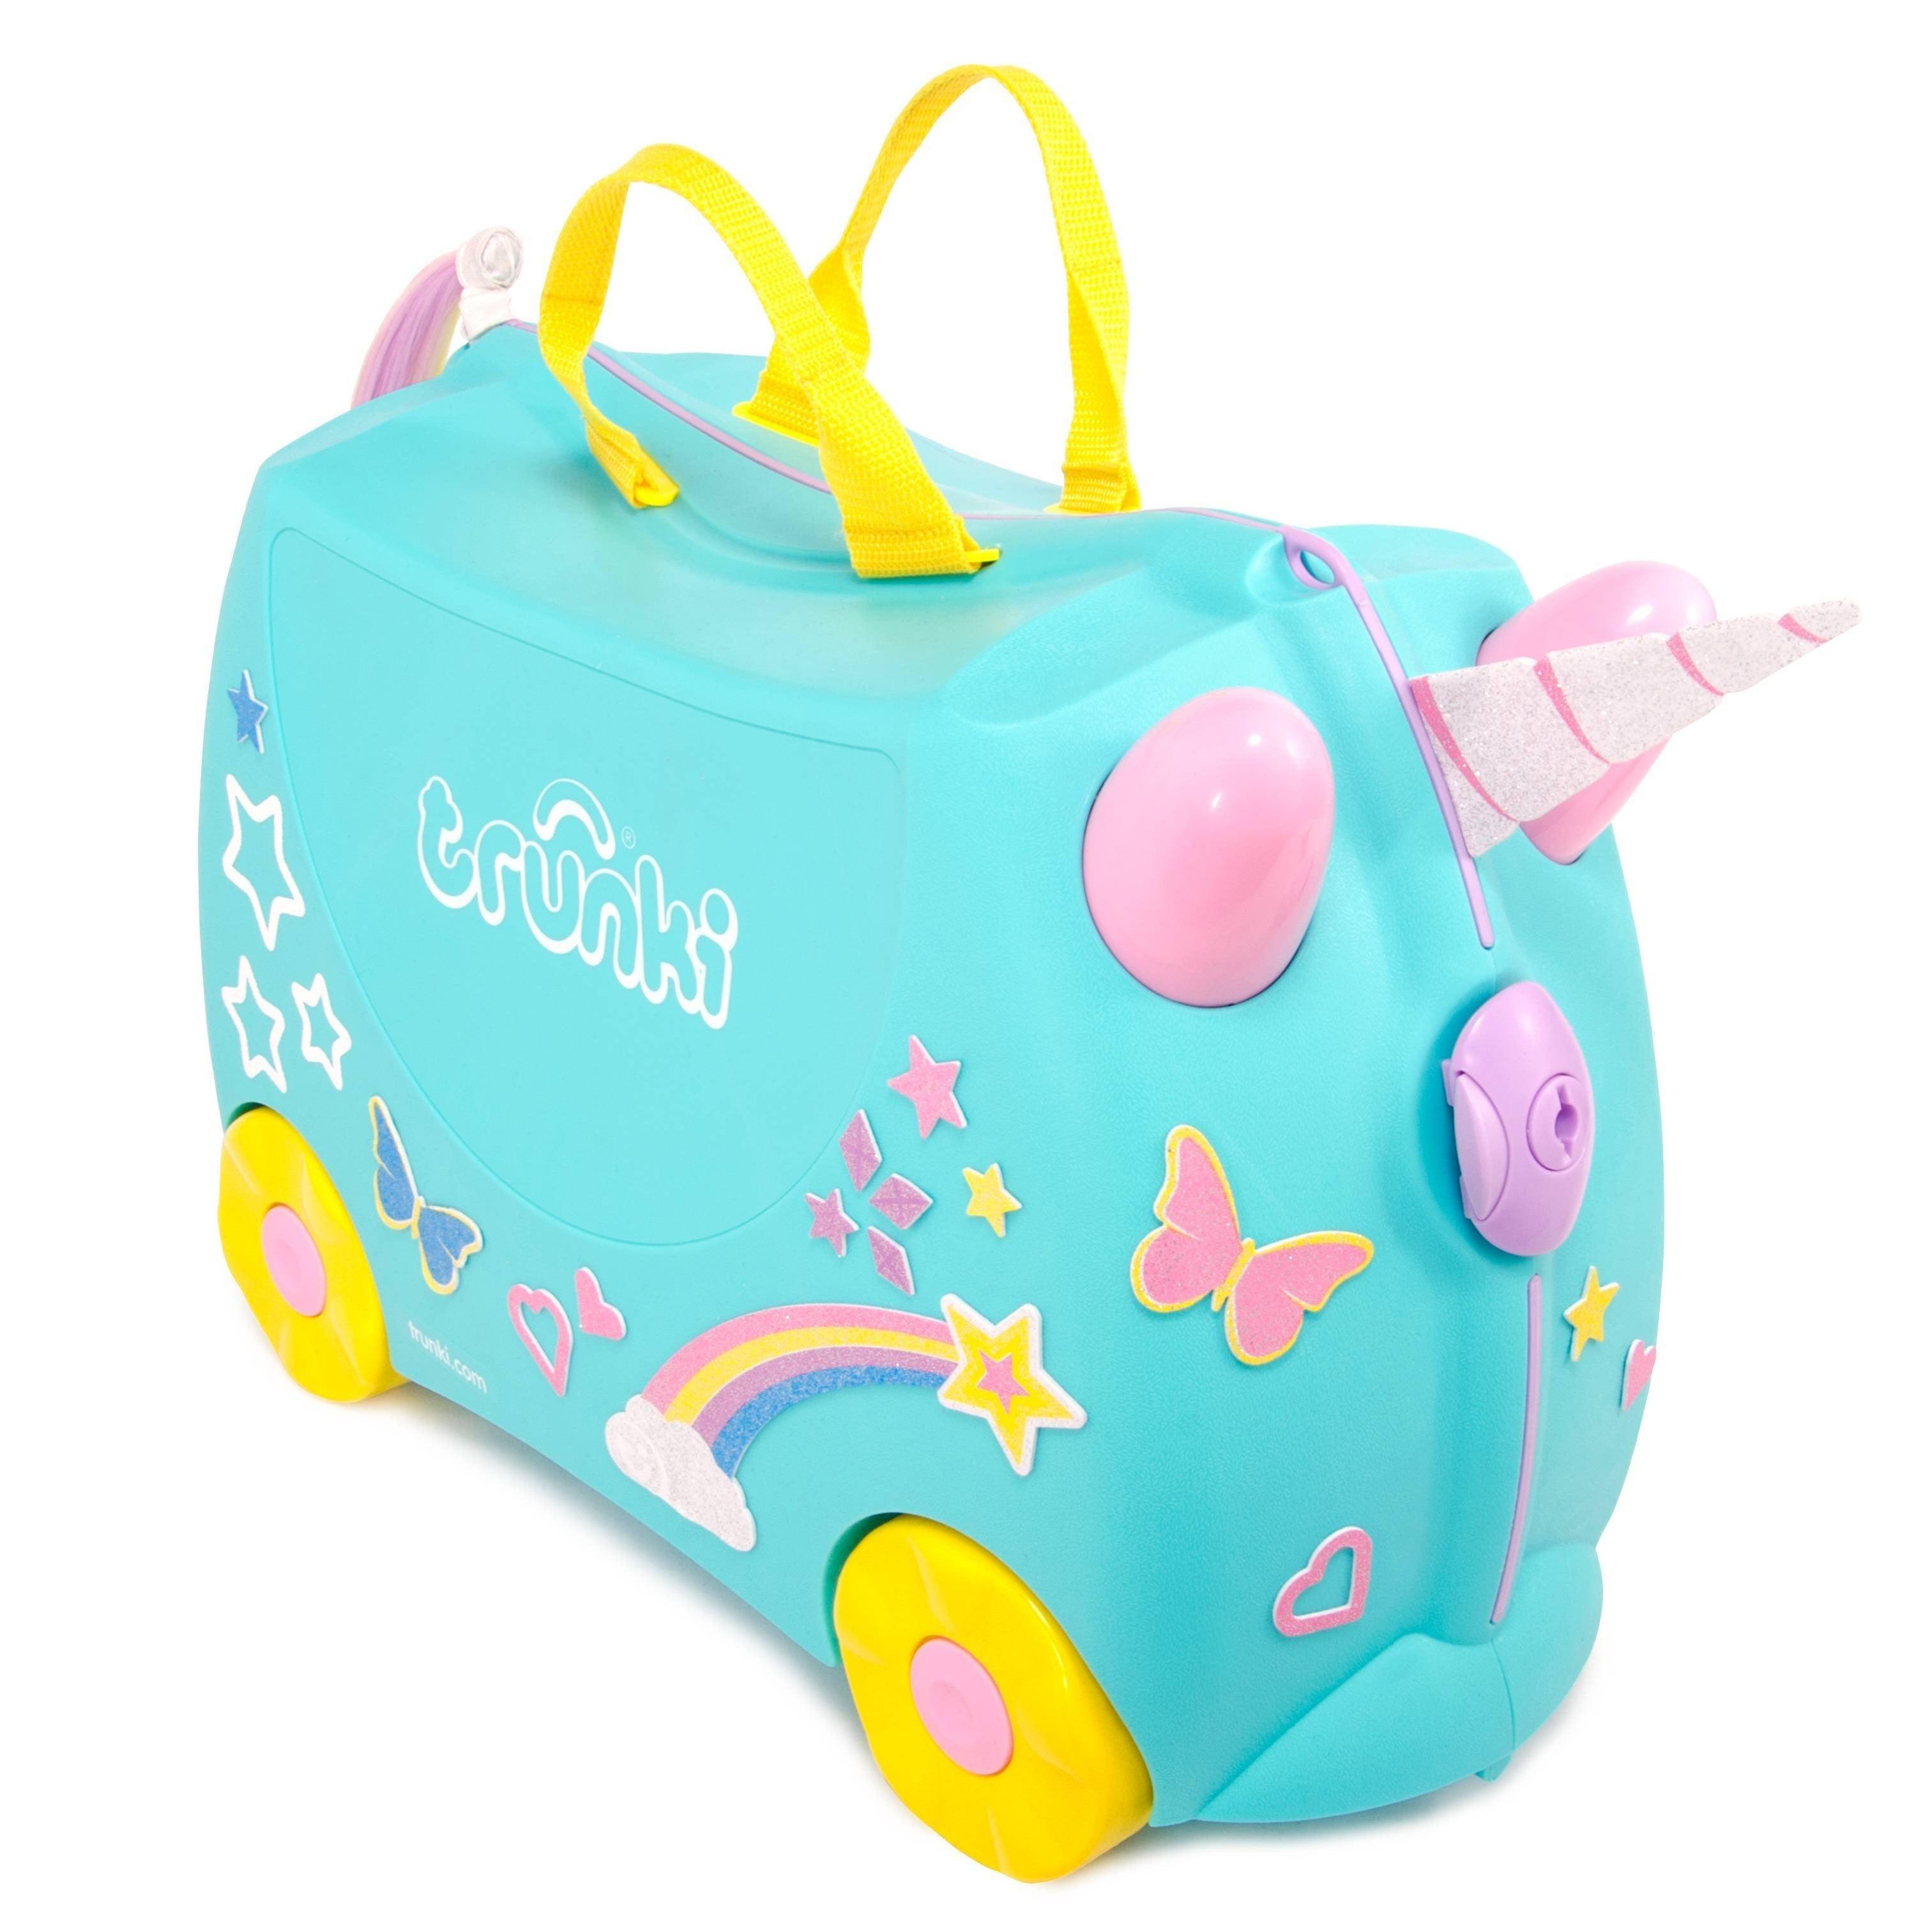 Trunki: jeżdżąca walizka dla dzieci jednorożec Una - Noski Noski